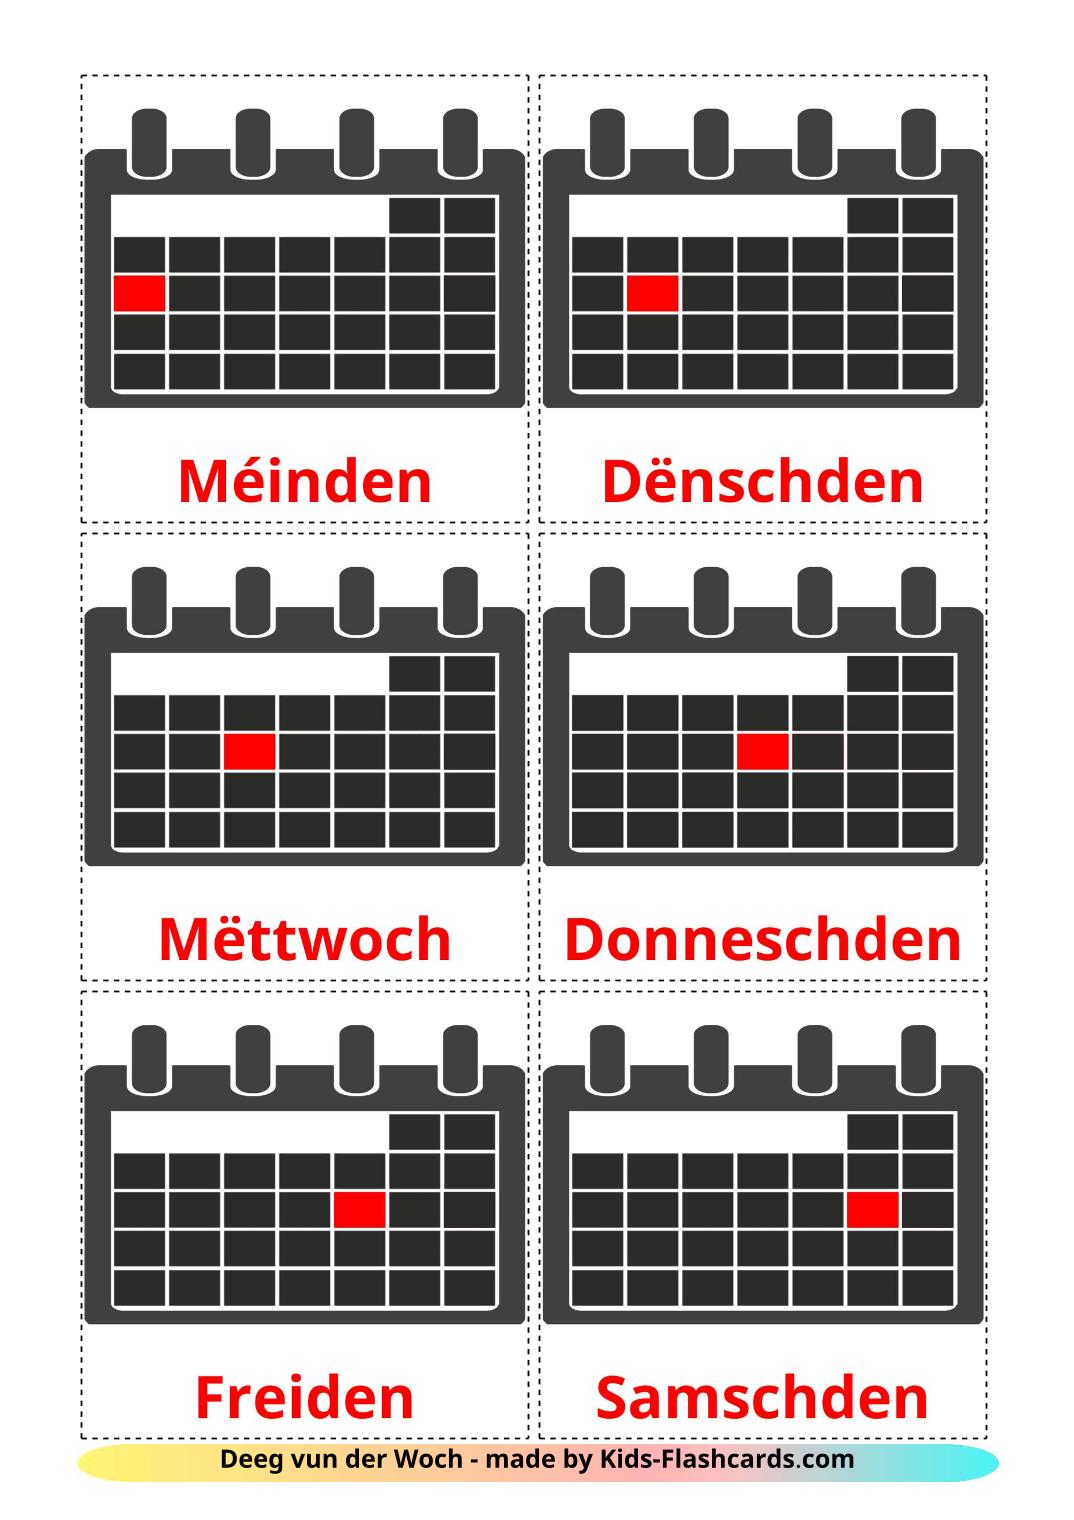 Les Jours de la Semaine - 12 Flashcards luxembourgeois imprimables gratuitement